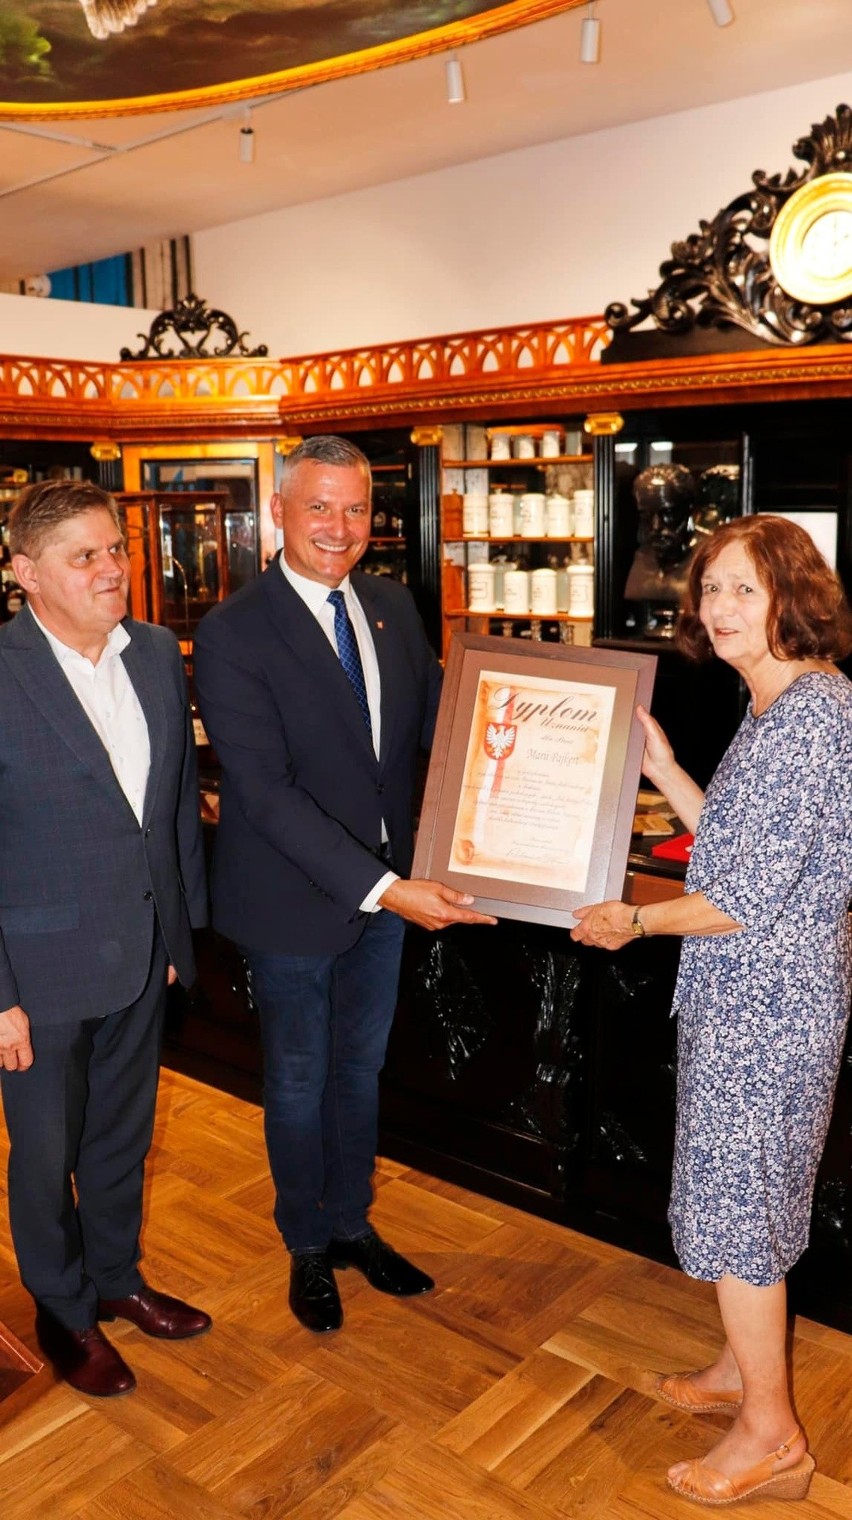 Dyplomy uznania dla ofiarodawców blisko dwustuletnich mebli ze słynnej radomskiej apteki „Pod Białym Orłem”  